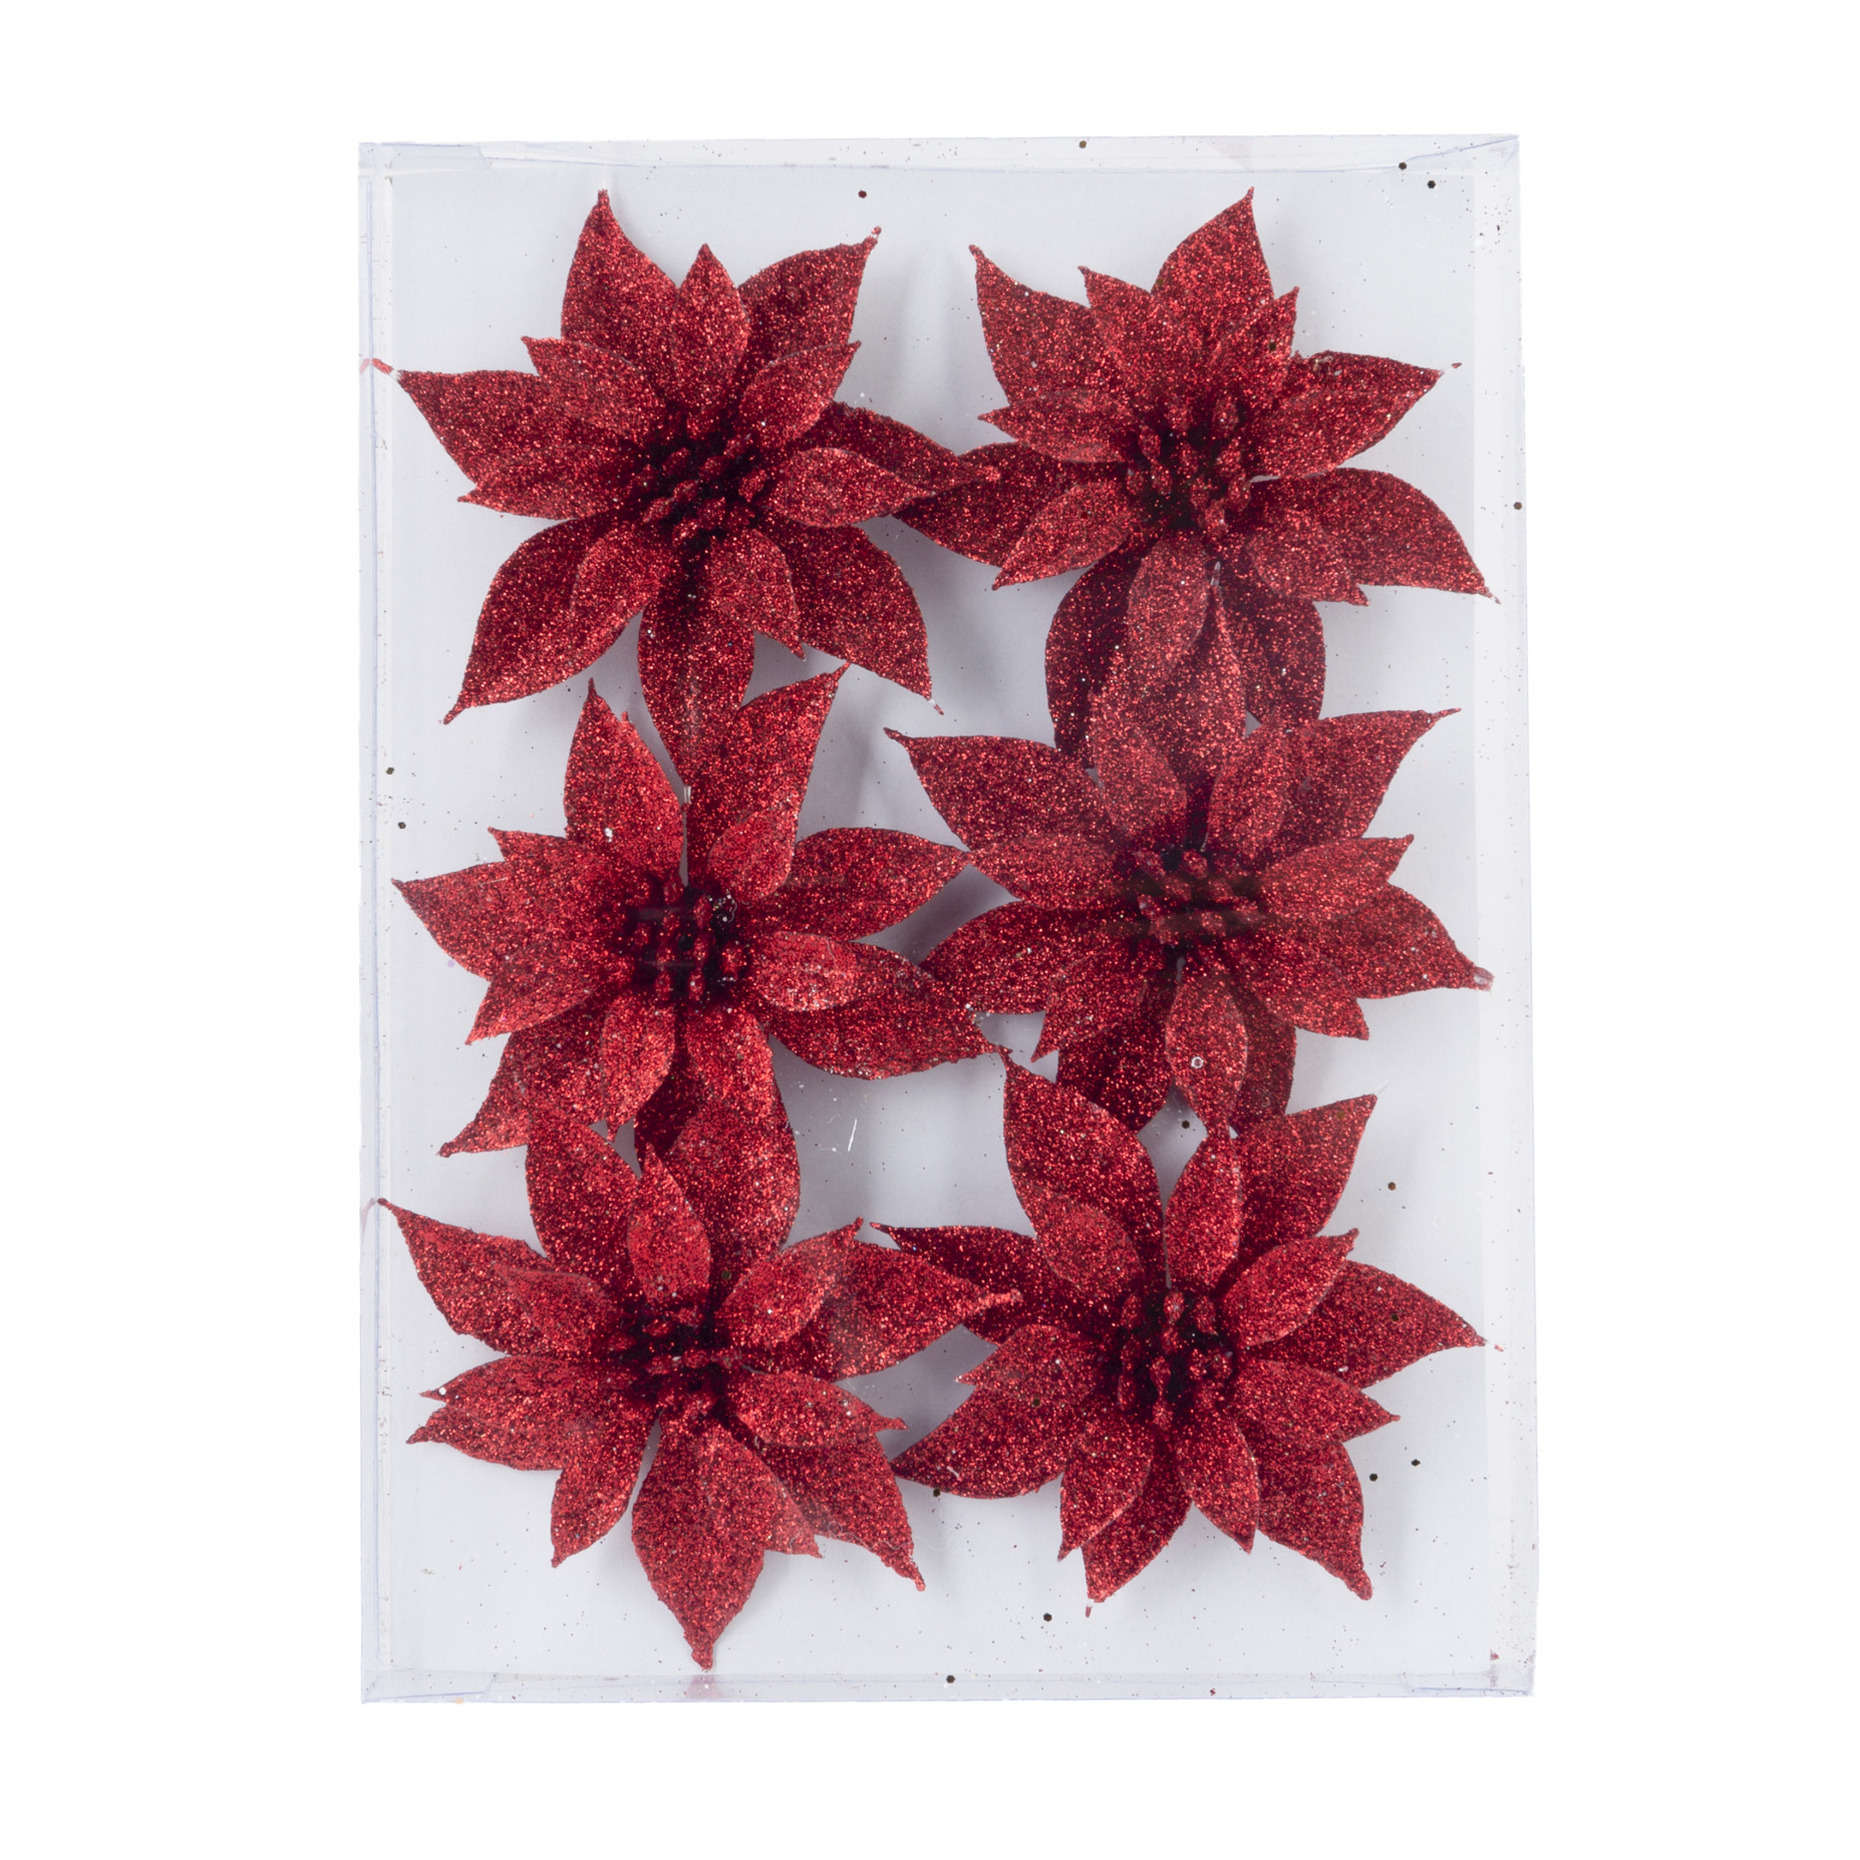 6x stuks decoratie bloemen rozen rood glitter op ijzerdraad 8 cm